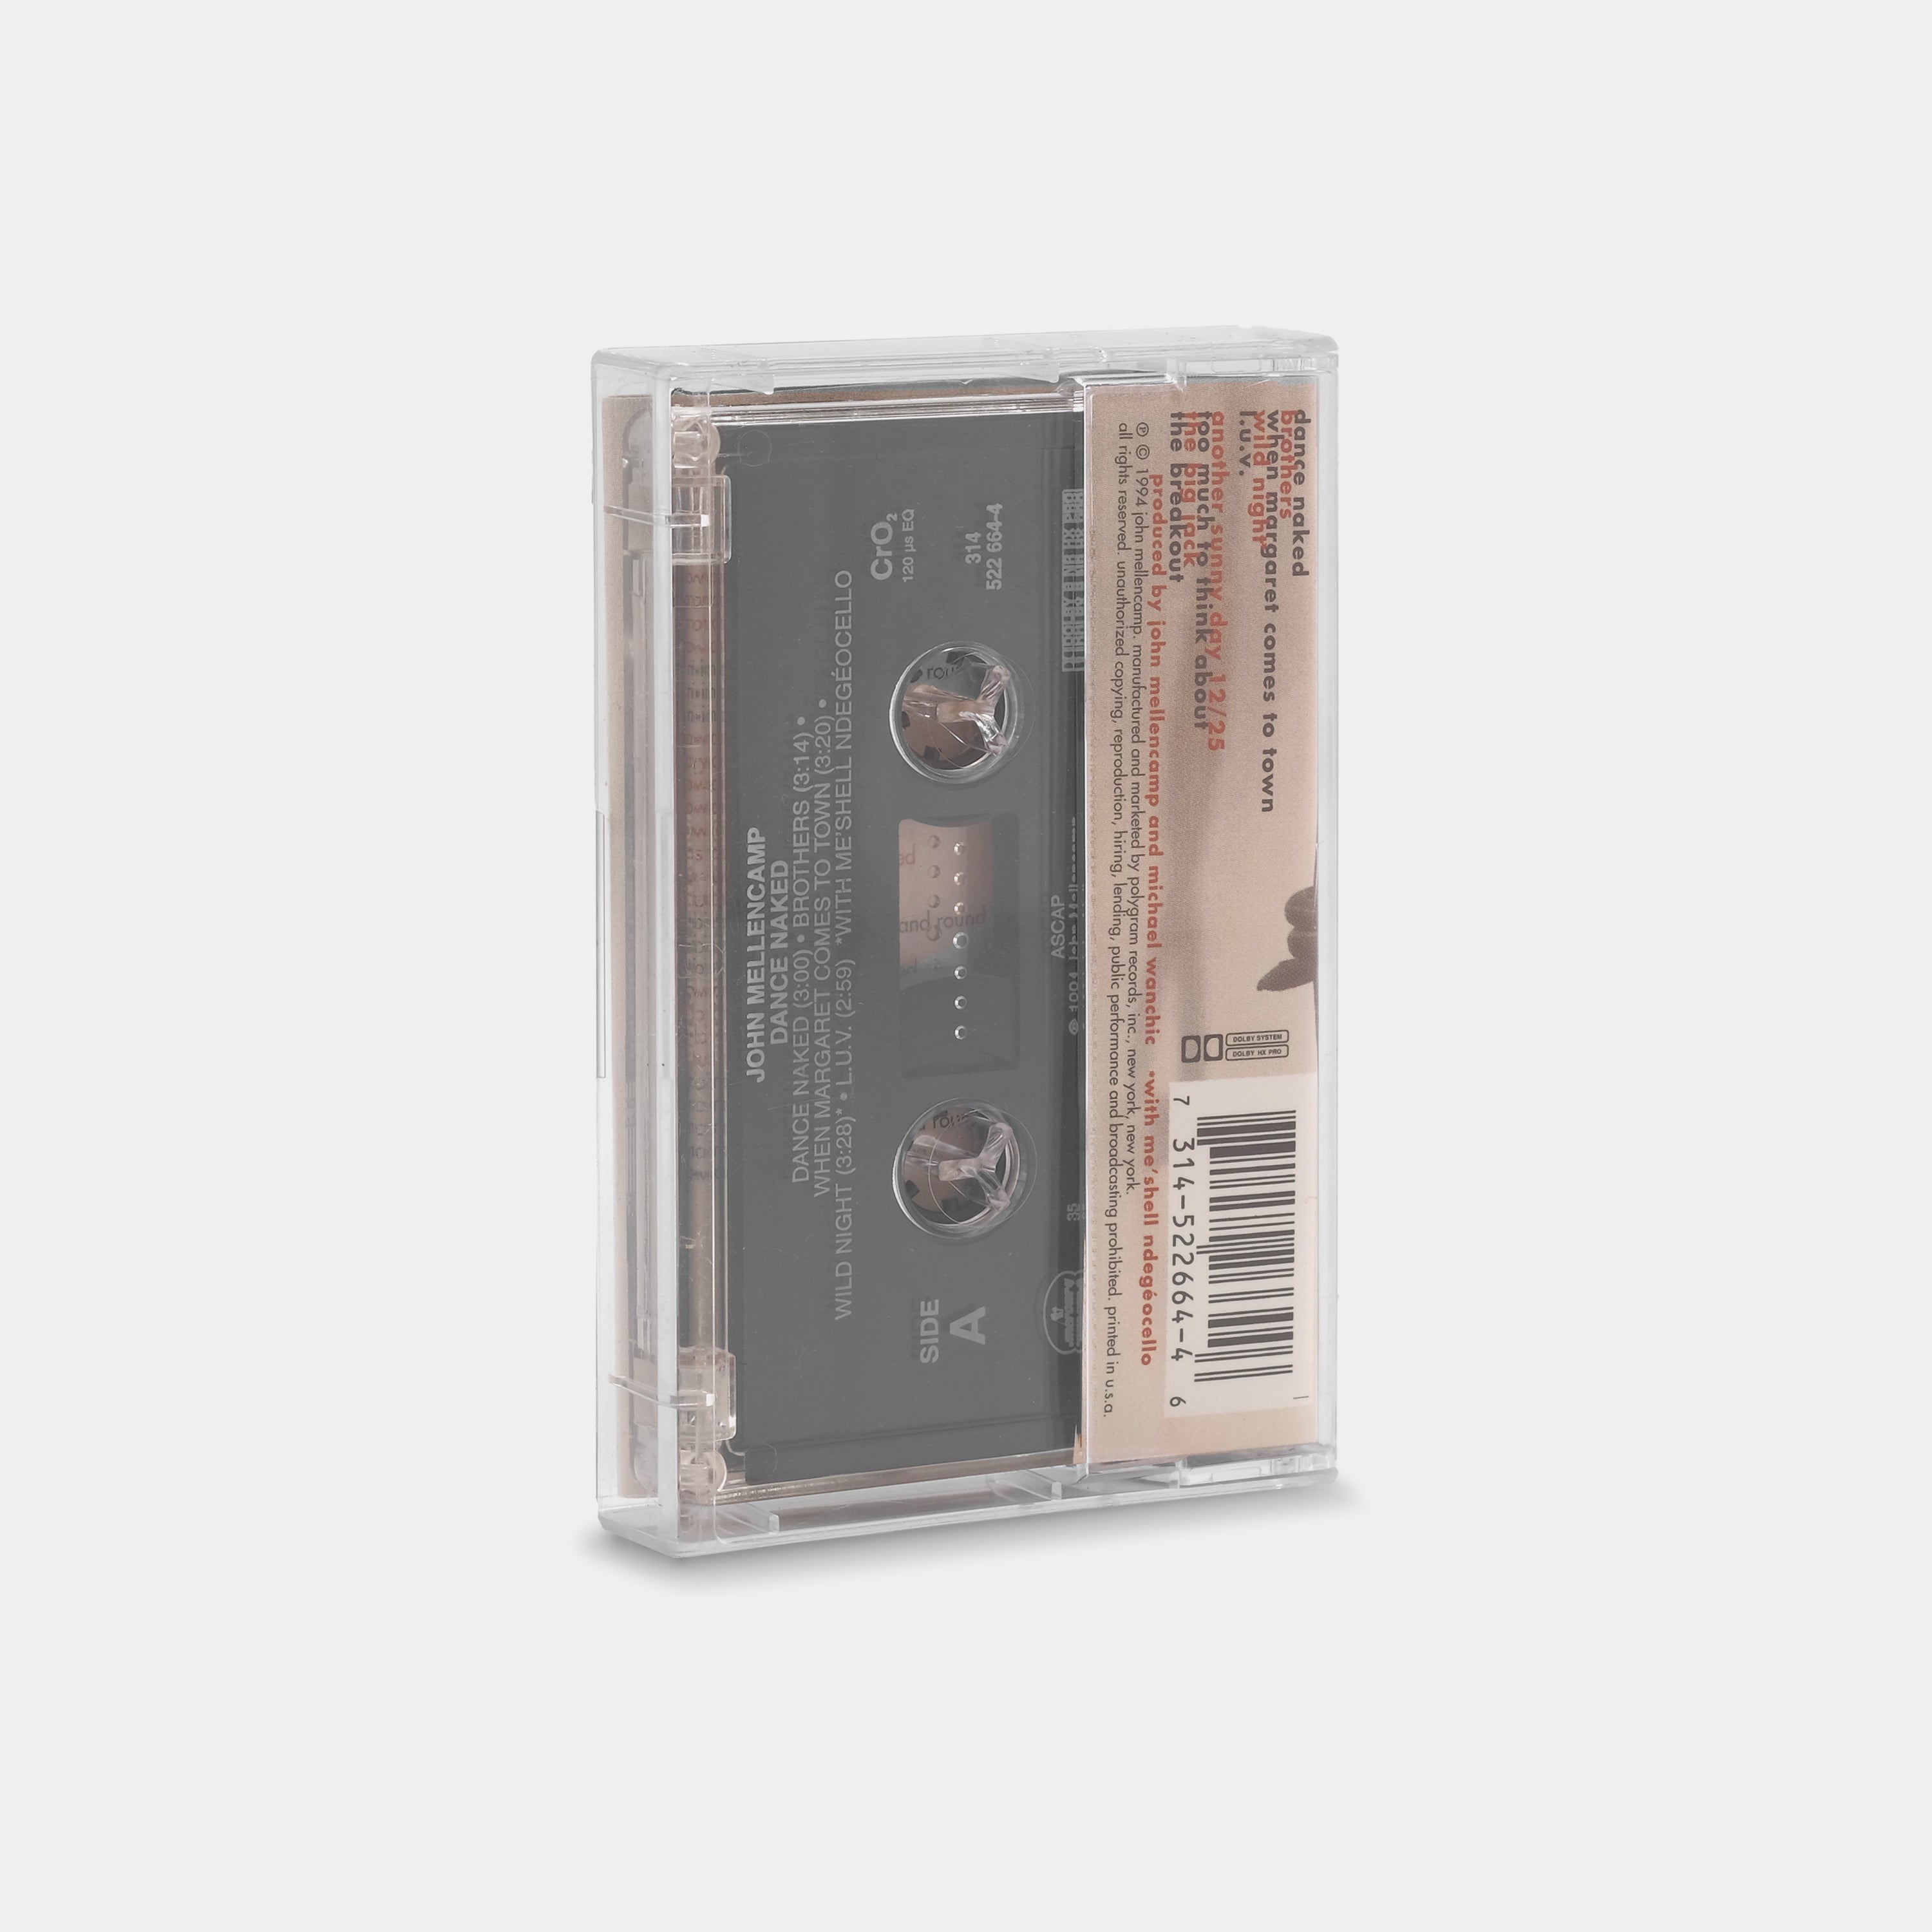 John Mellencamp - Dance Naked Cassette Tape